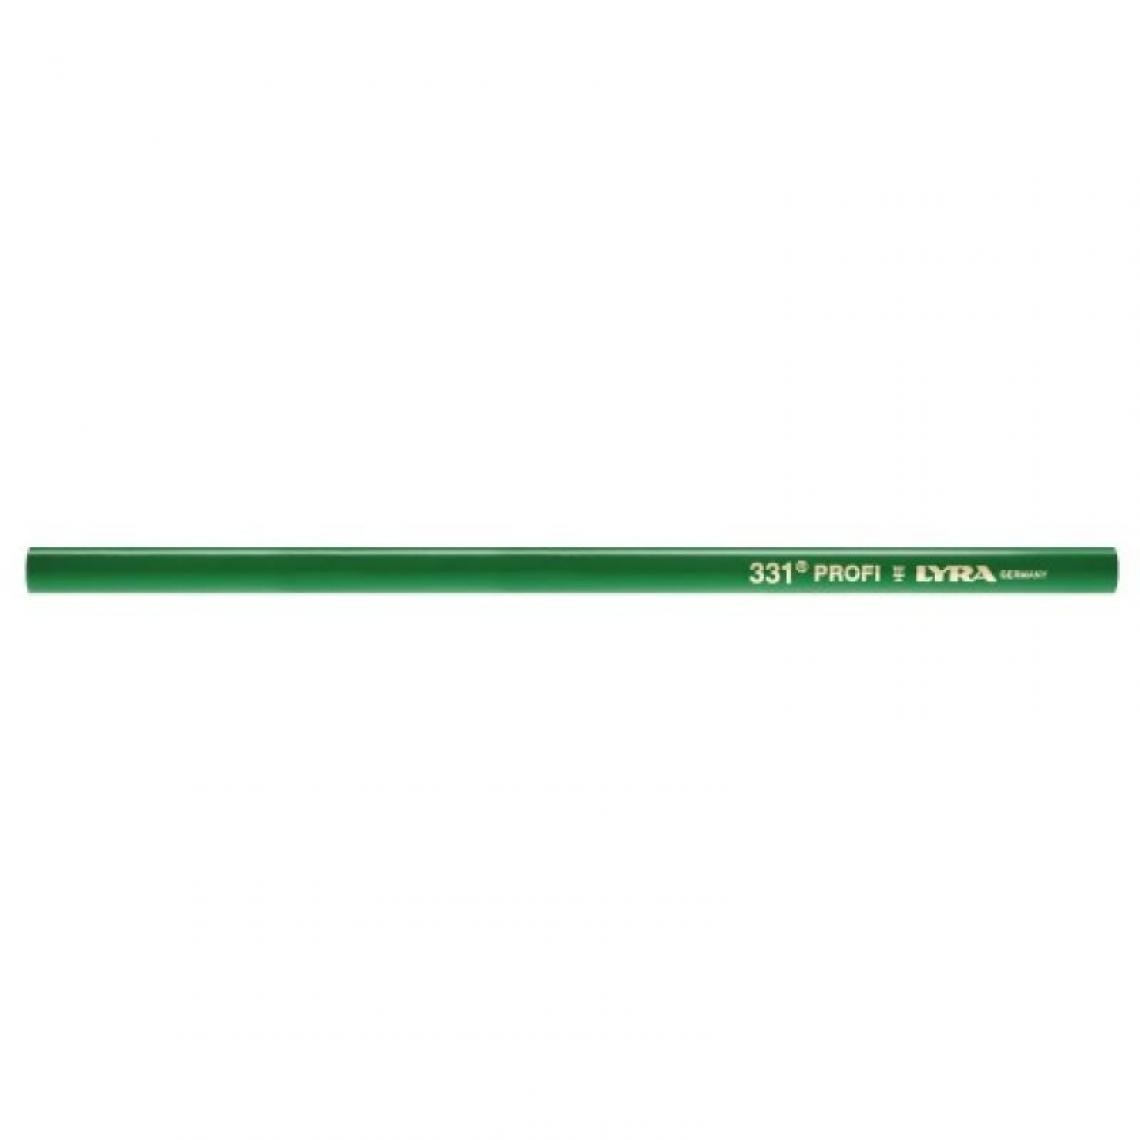 Lyra - Crayon de maçon, 331 Pro, longueur 300 mm, boîte de 12 pièces - Pointes à tracer, cordeaux, marquage